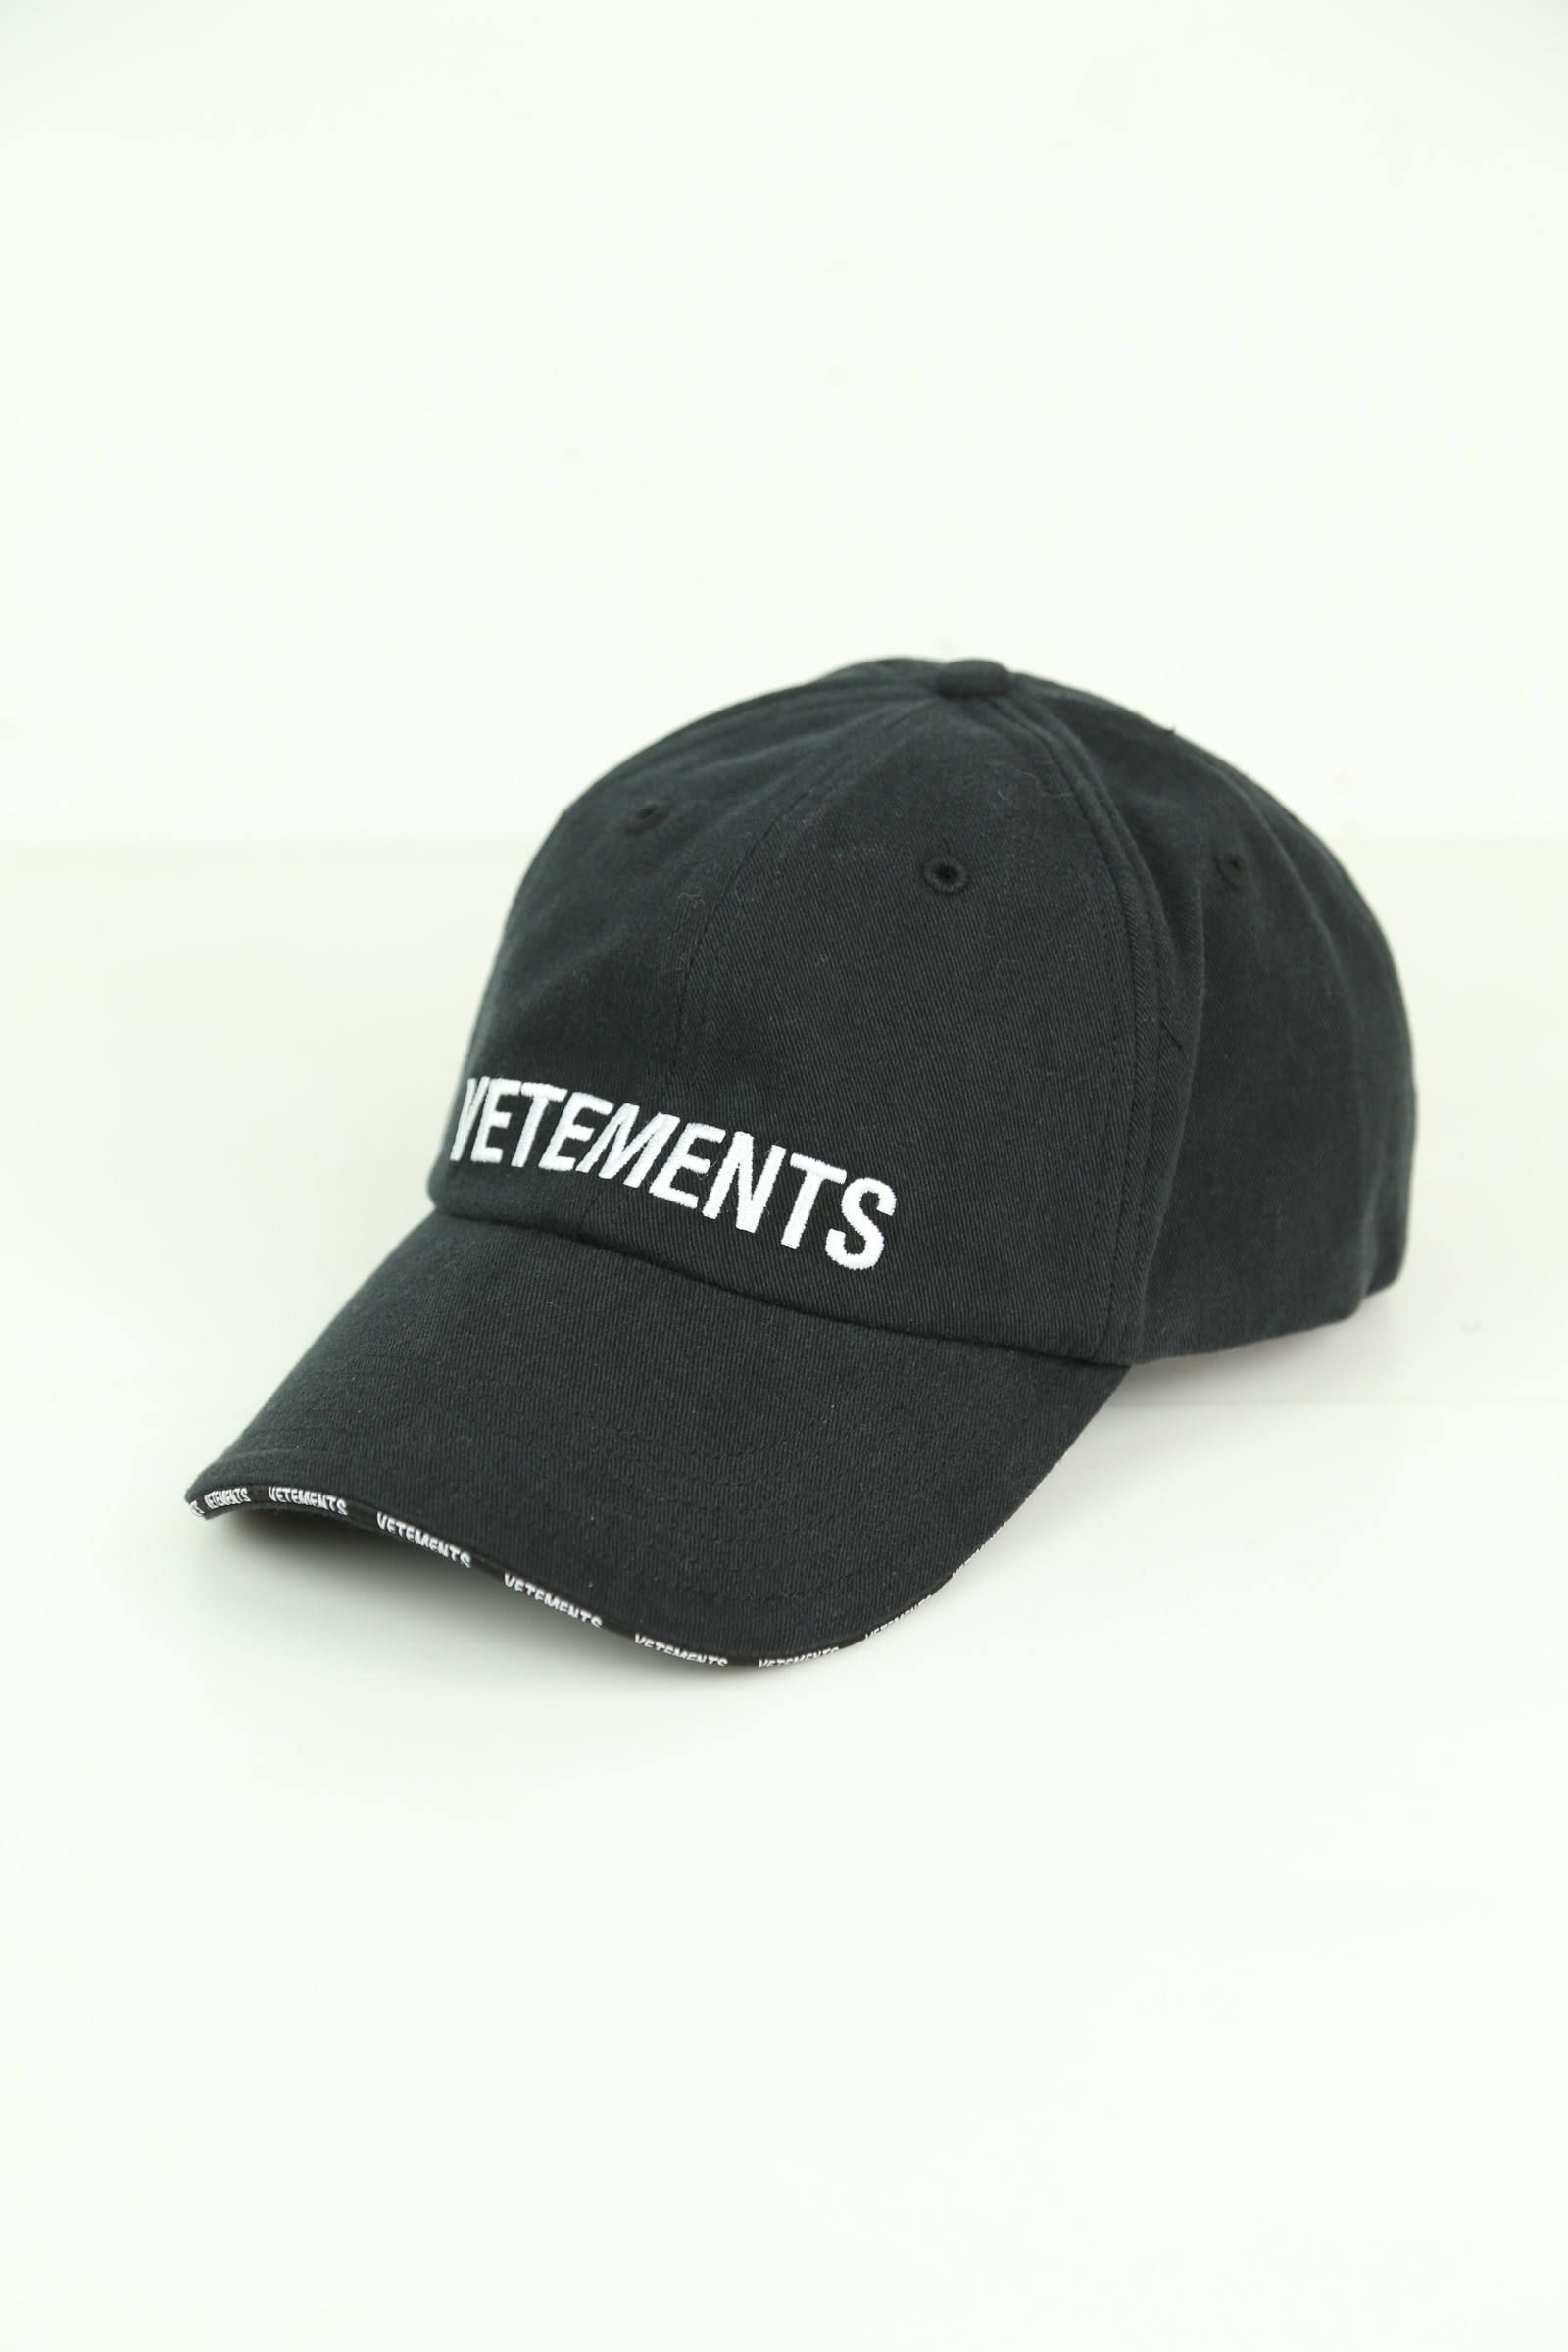 VETEMENTS - LOGO CAP / ブラック | Tempt